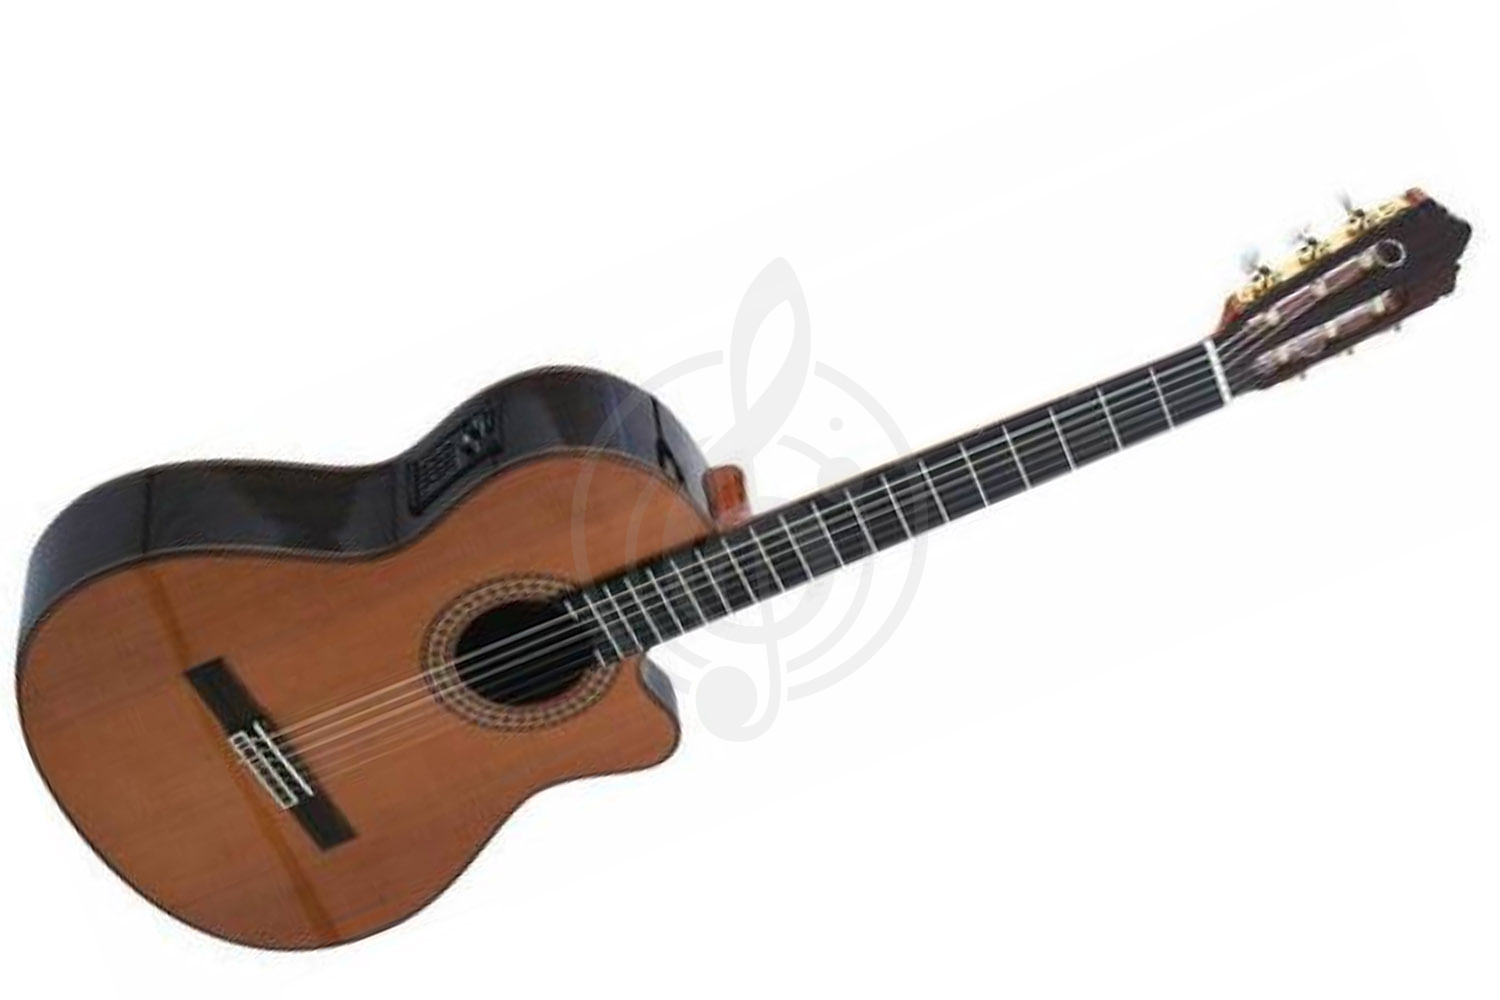 Классическая гитара 3/4 Классические гитары 3/4 PEREZ PEREZ 690 Cedar E2 - Классическая гитара со звукоснимателем Перез 690 Cedar E2 - фото 1